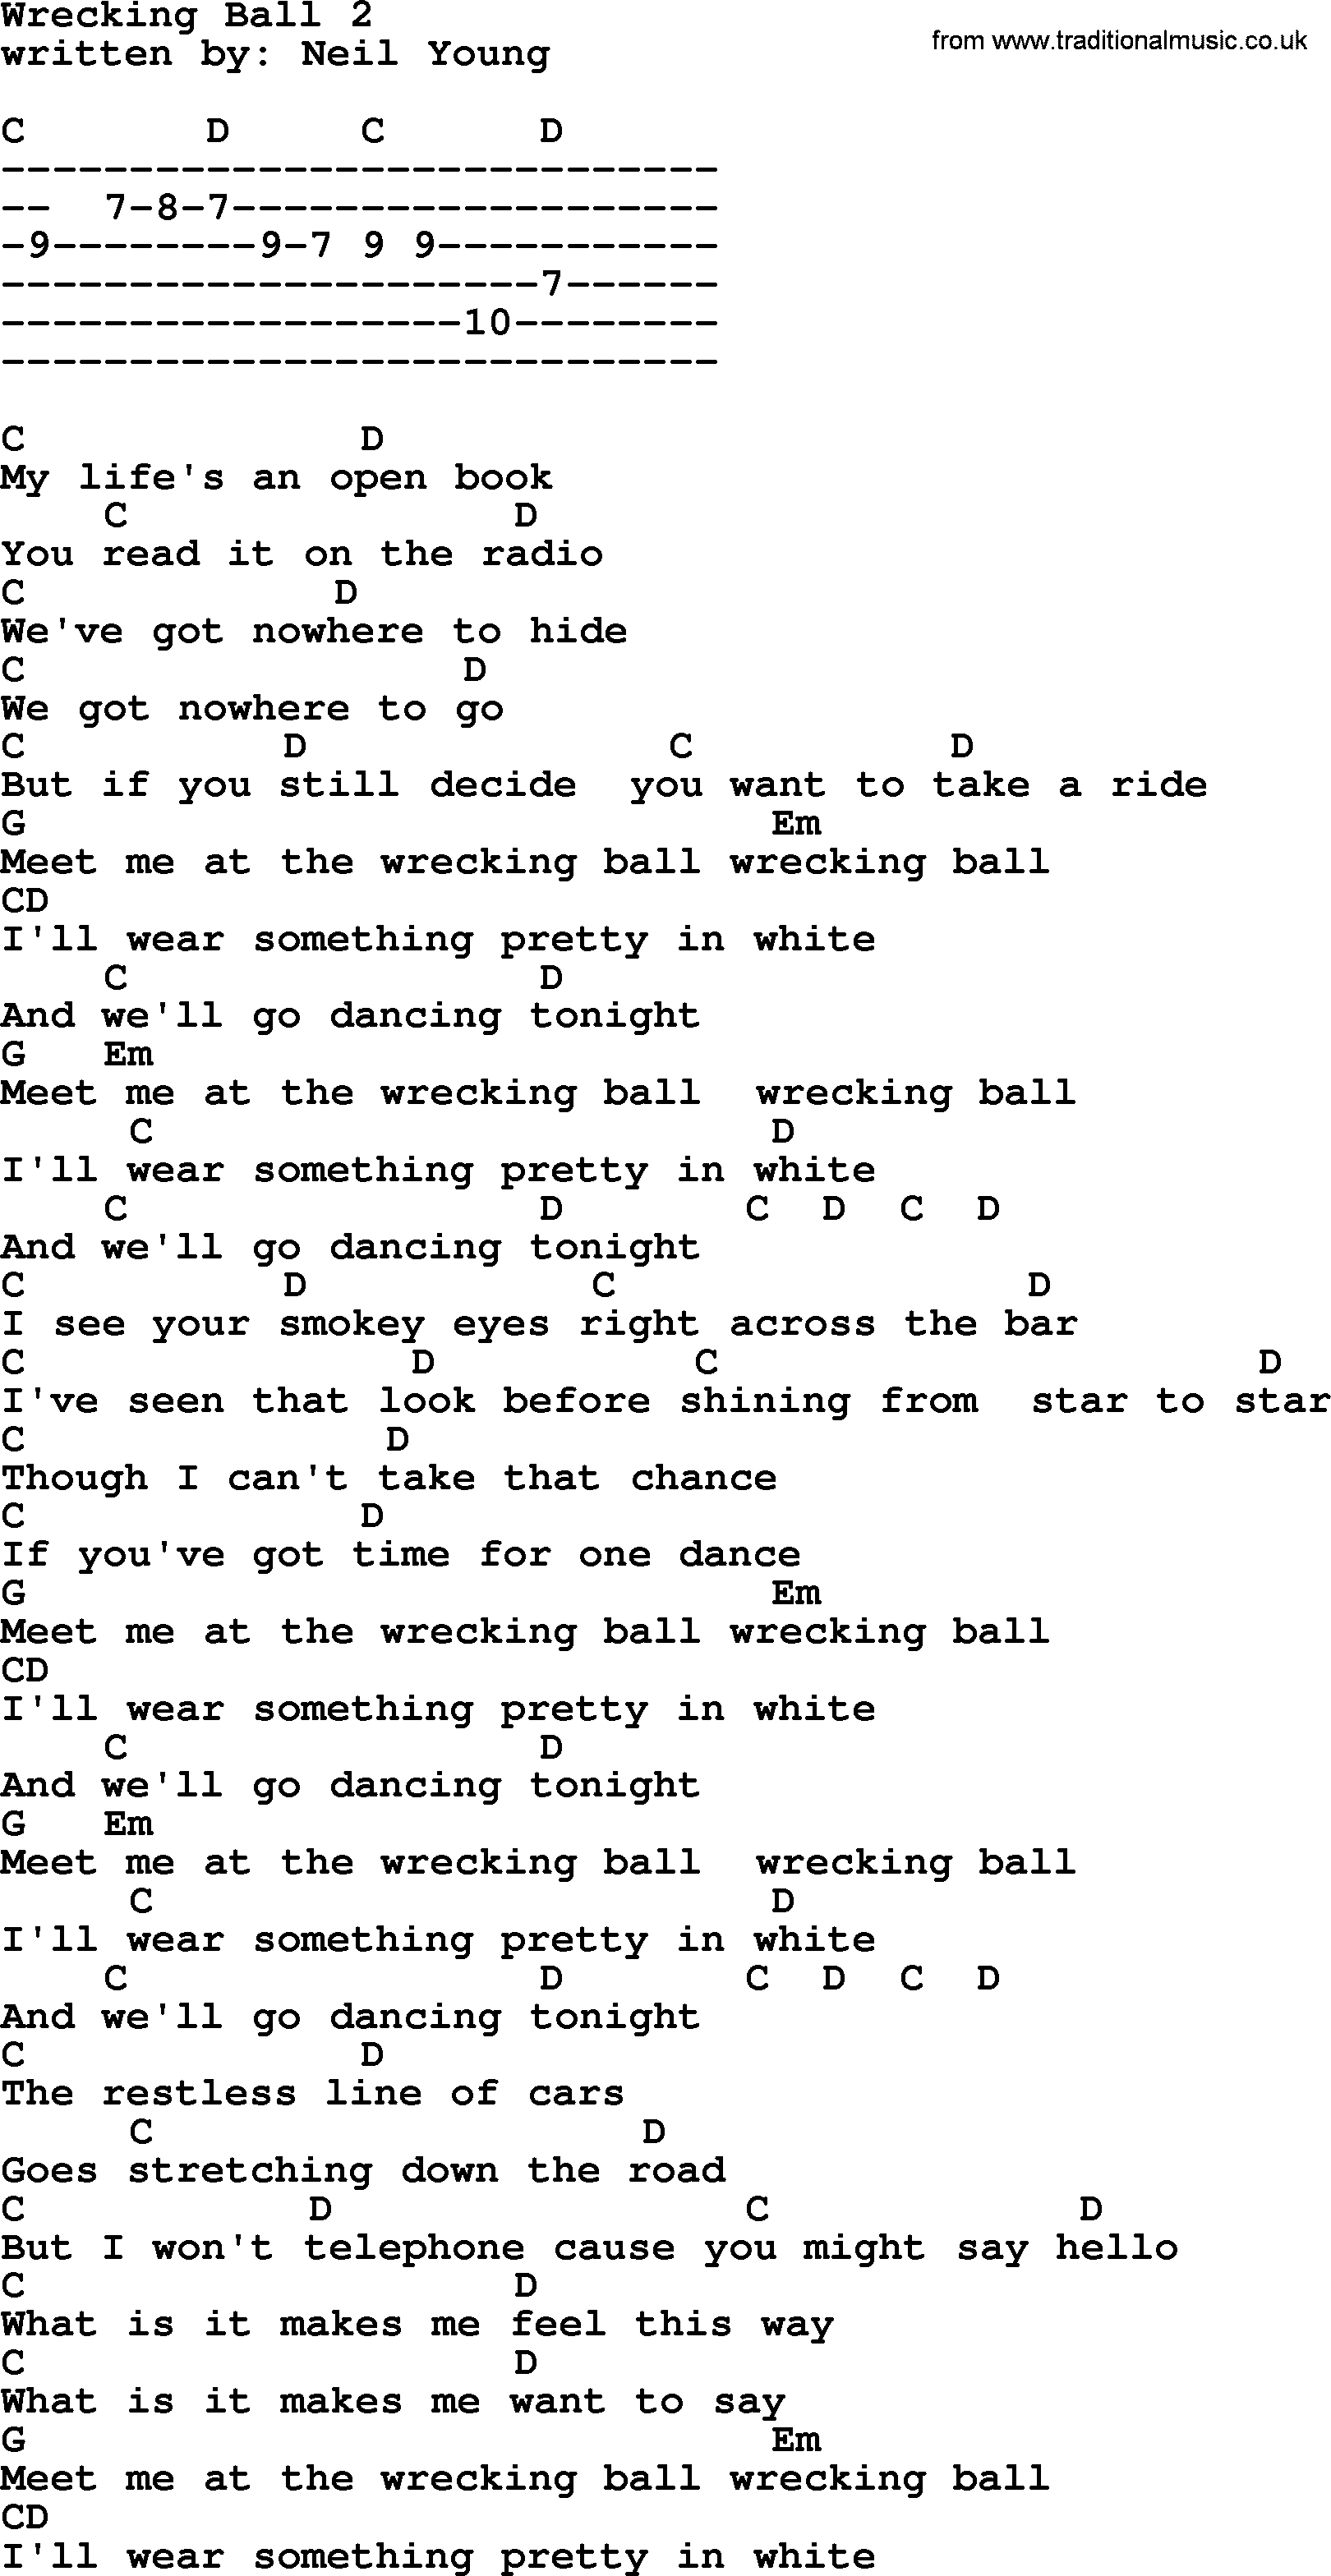 Wrecking Ball Chords Emmylou Harris Song Wrecking Ball 2 Lyrics And Chords